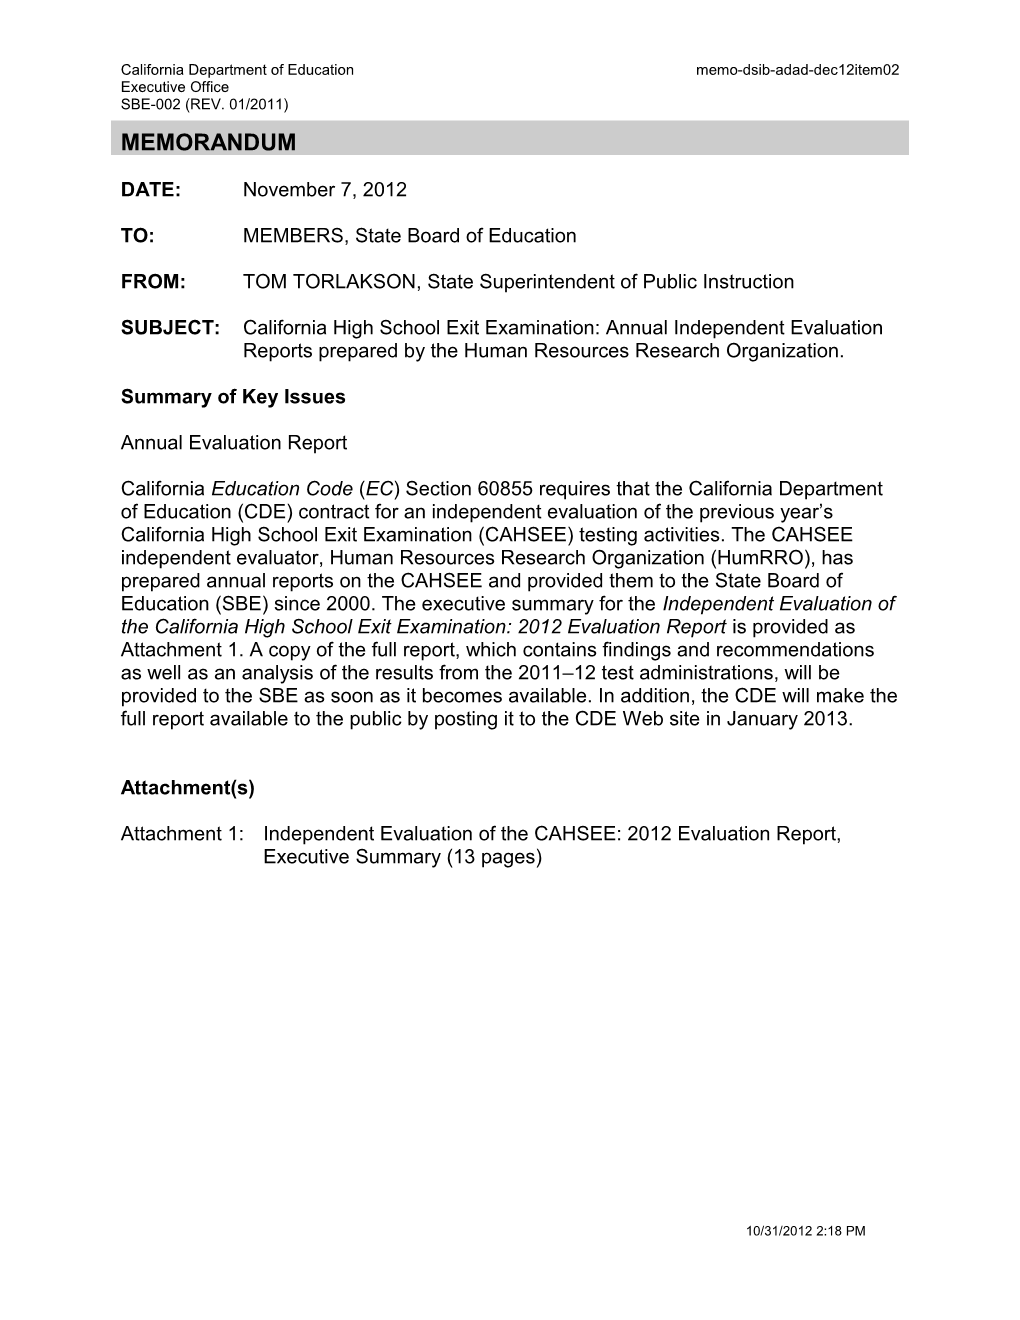 December 2012 Memorandum ADAD Item 2 - Information Memorandum (CA State Board of Education)